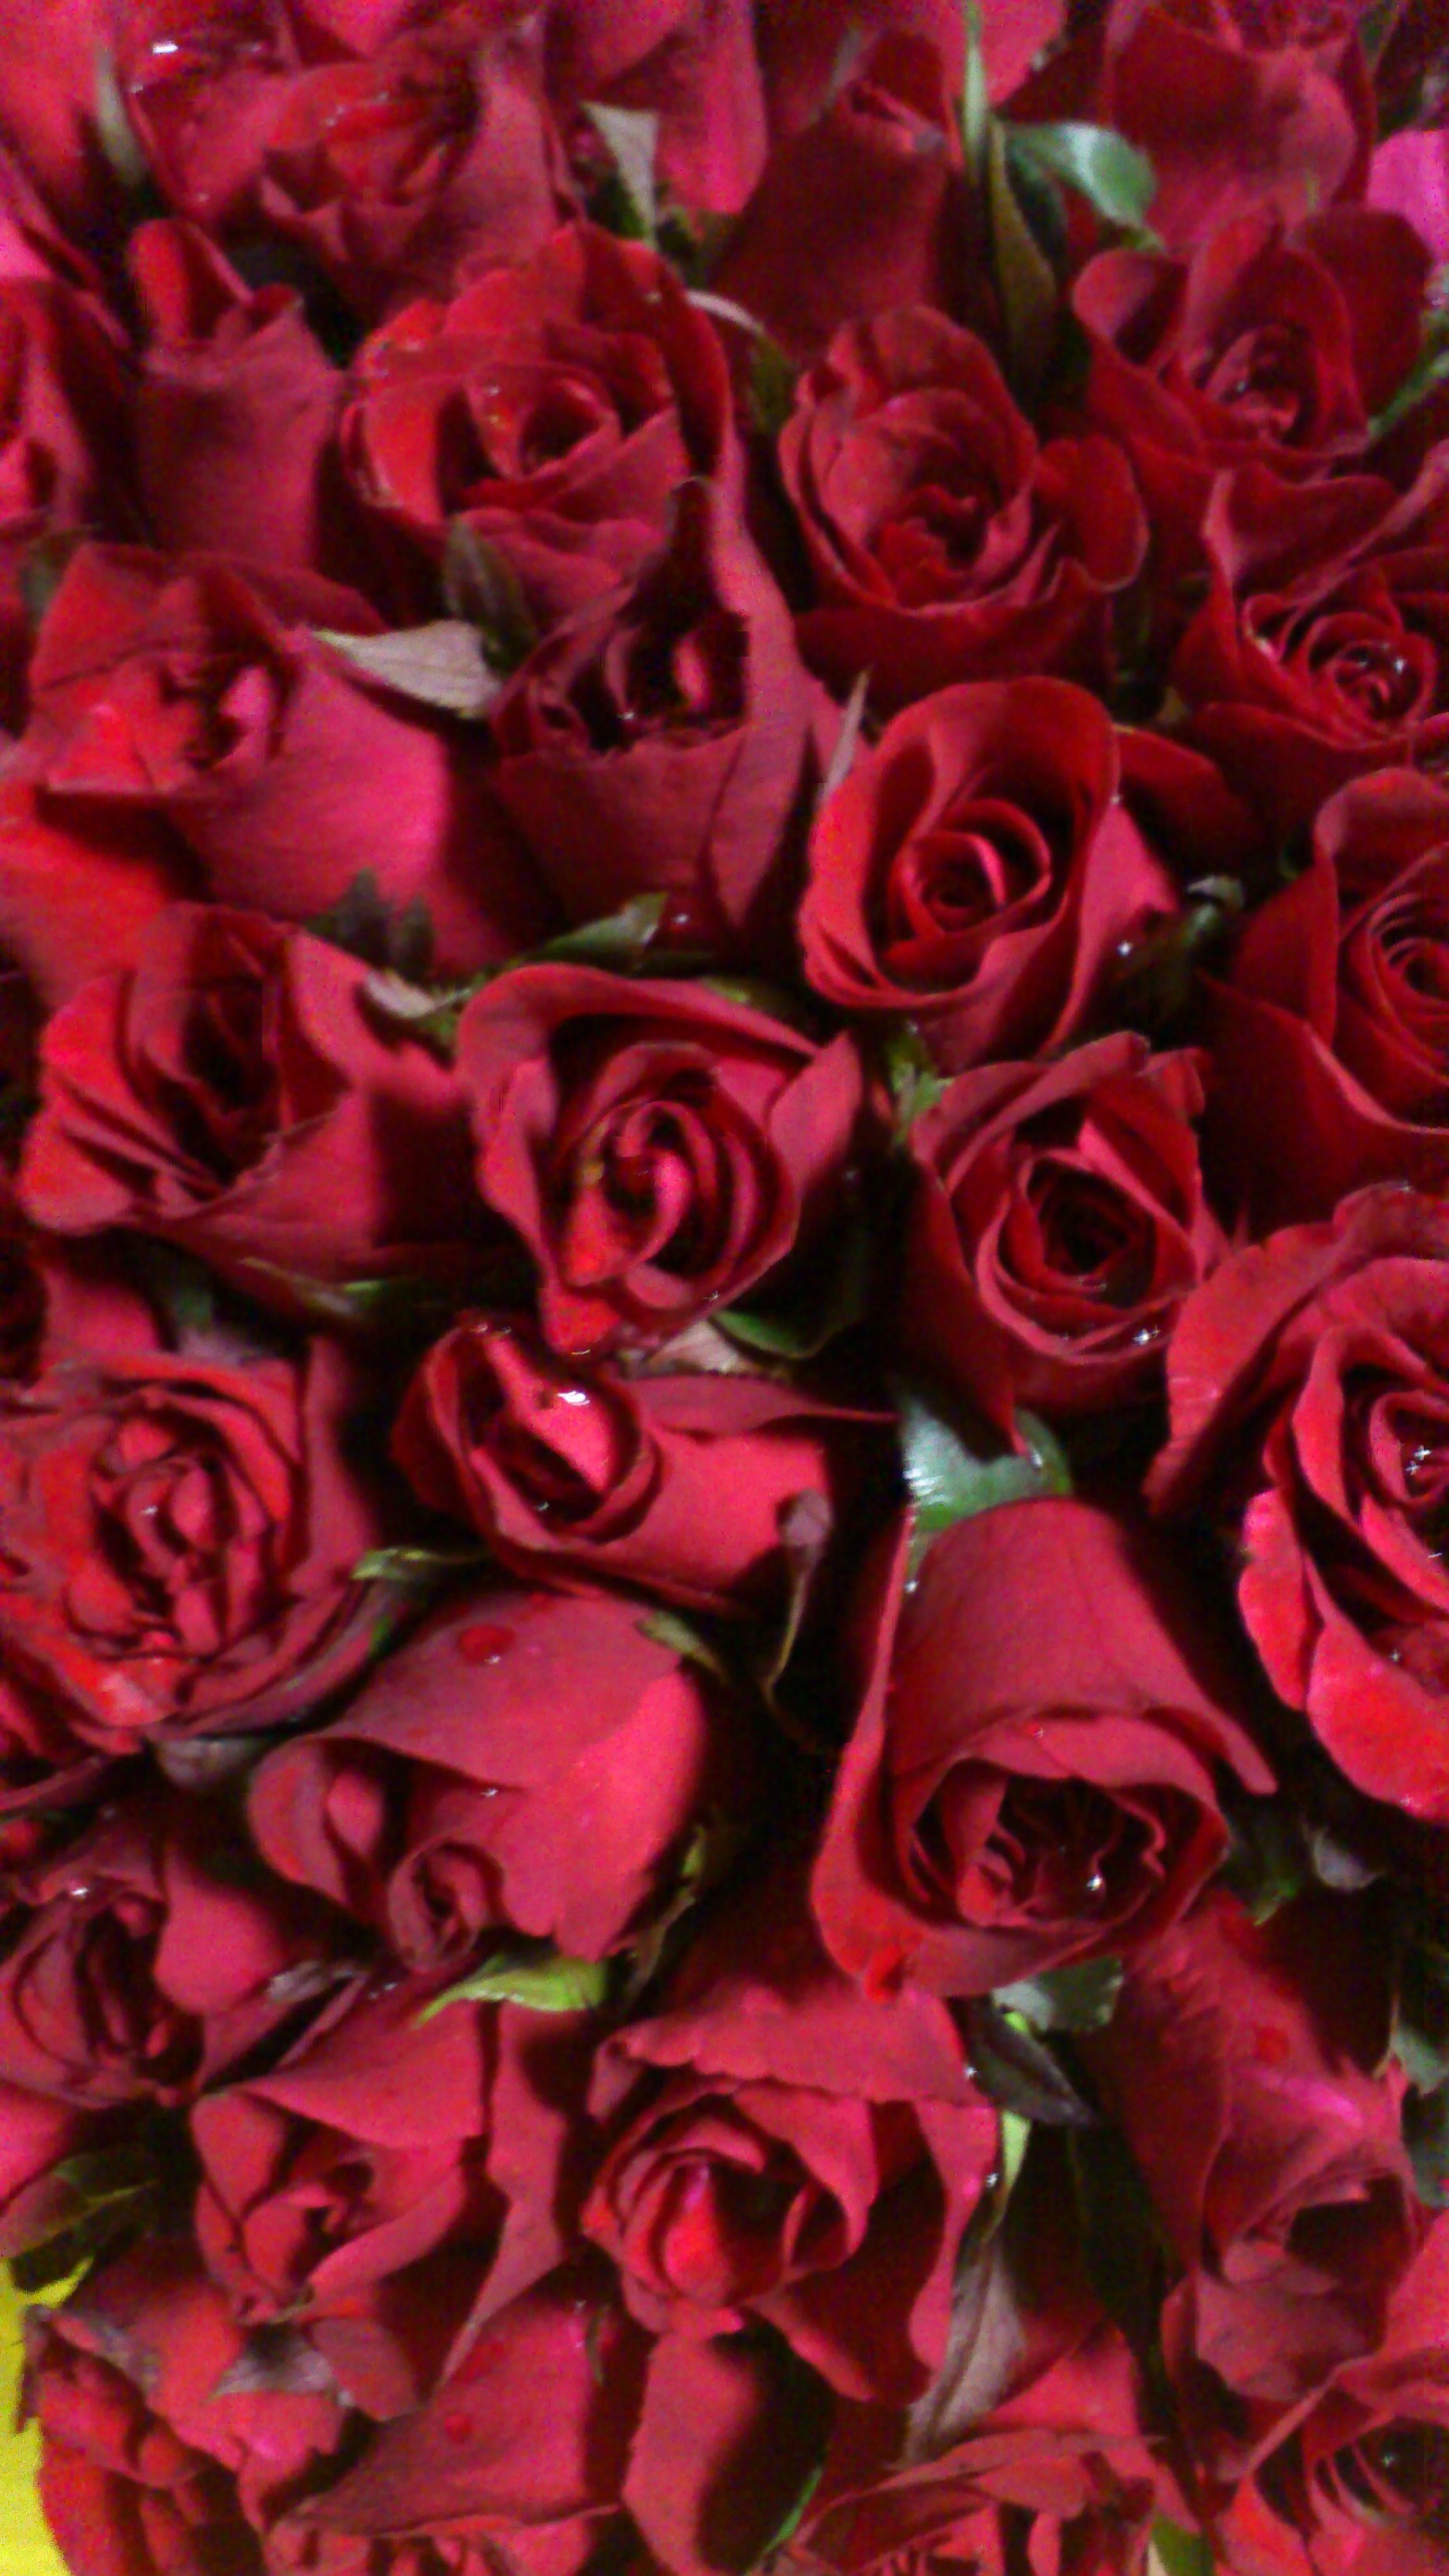 Bó hoa hồng nhung đỏ thẫm: Một bó hoa hồng nhung đỏ thẫm luôn đầy ý nghĩa và tình cảm. Hãy ngắm nhìn và cảm nhận sự đẹp đẽ của chúng qua hình ảnh. Một món quà tuyệt vời để gửi gắm những lời yêu thương và chúc phúc đến những người thân yêu.